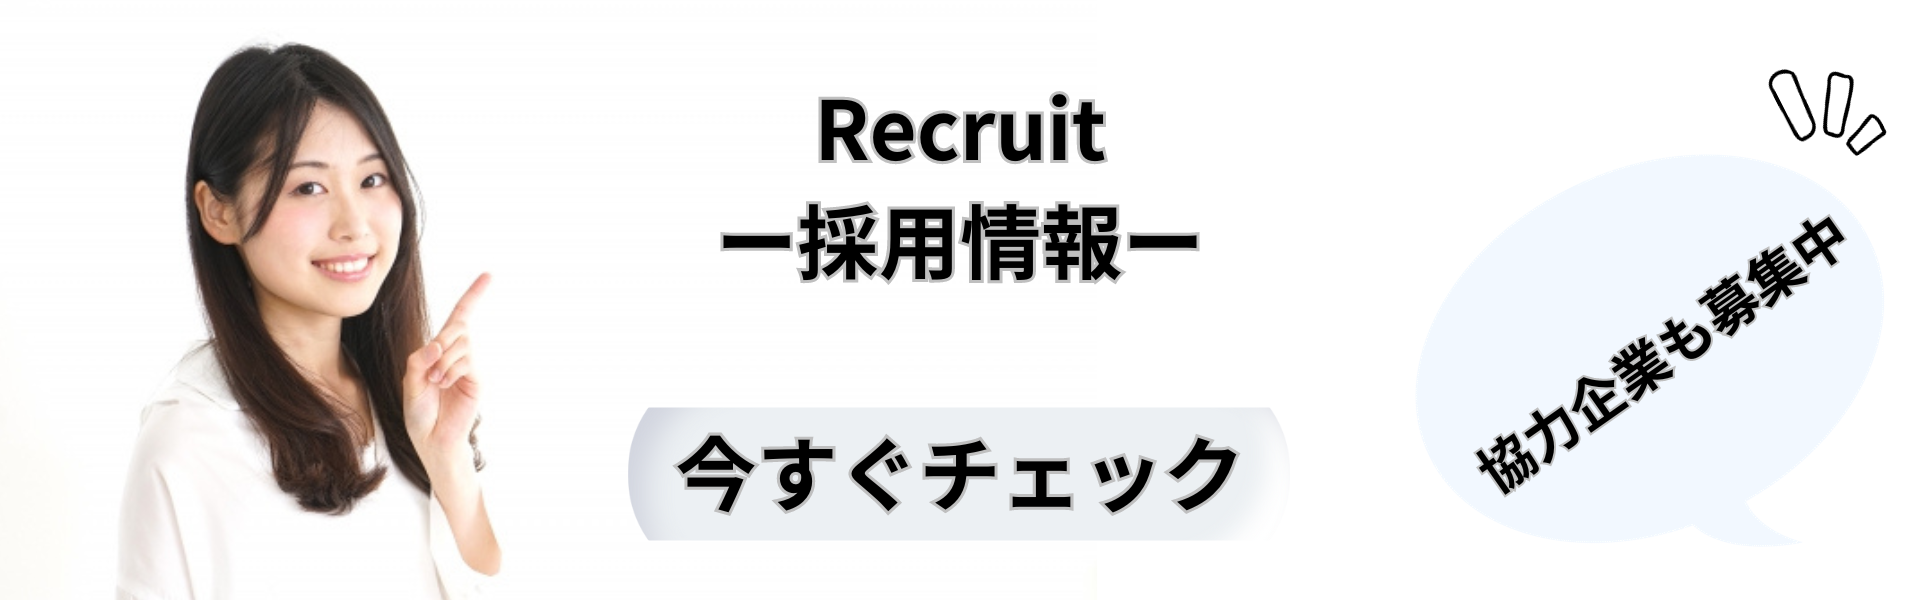 Recruit-採用情報-